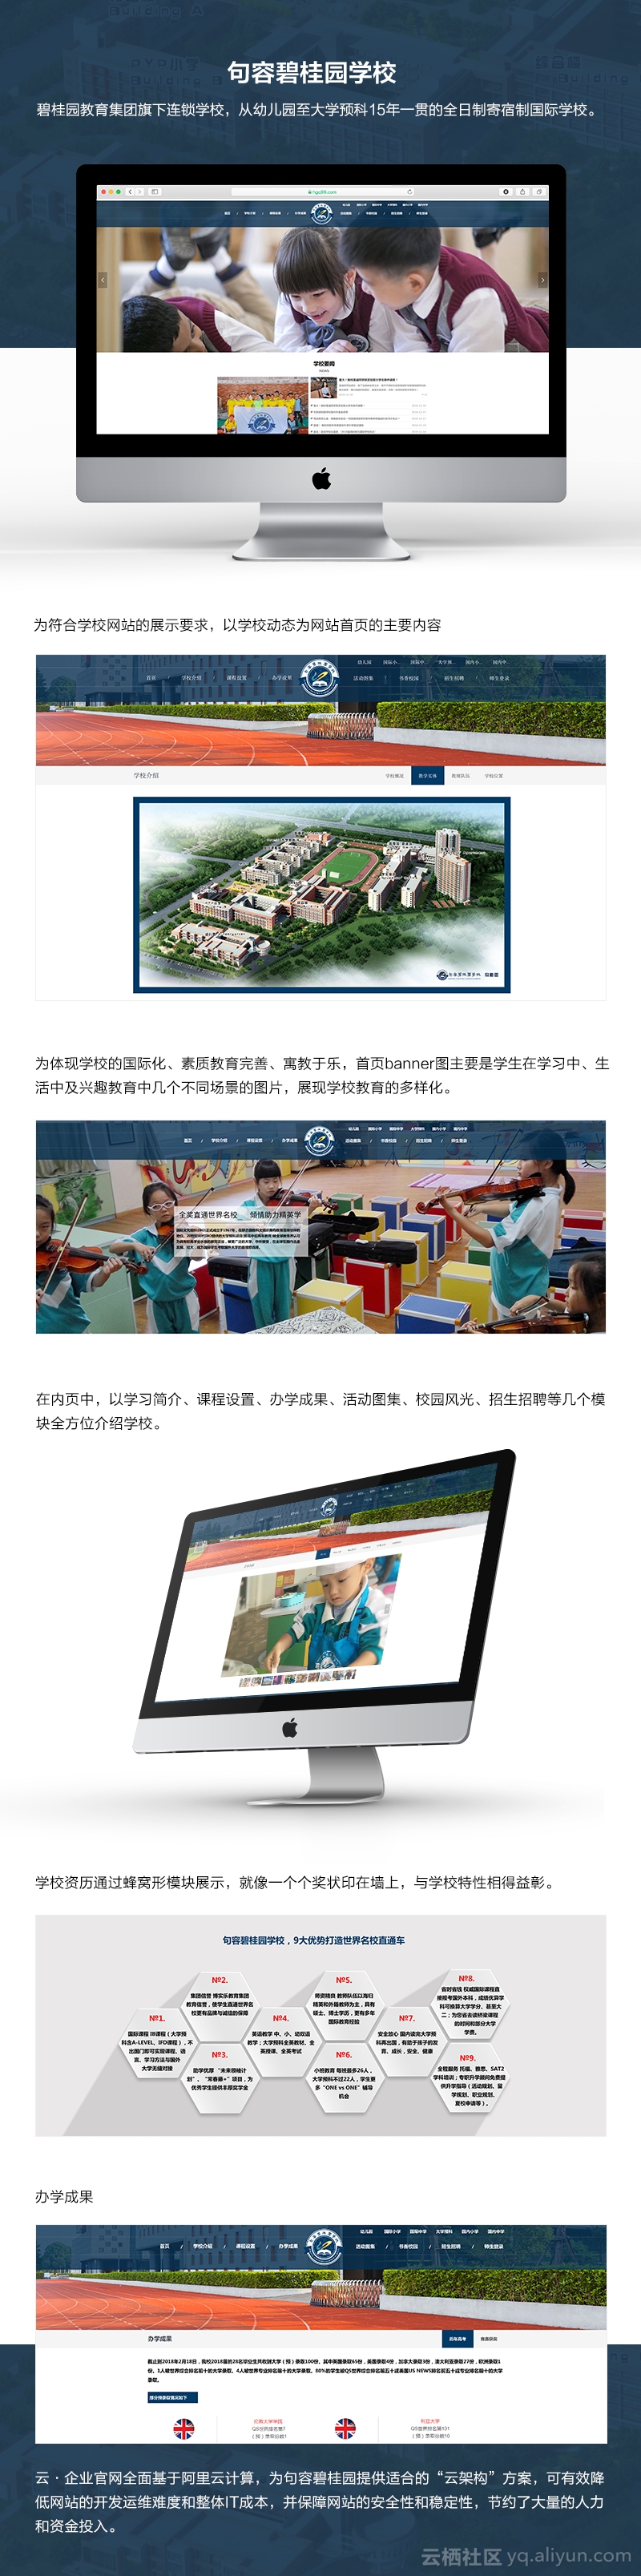 传统网站维护难，智能化建站平台帮助国际学校一站解决...